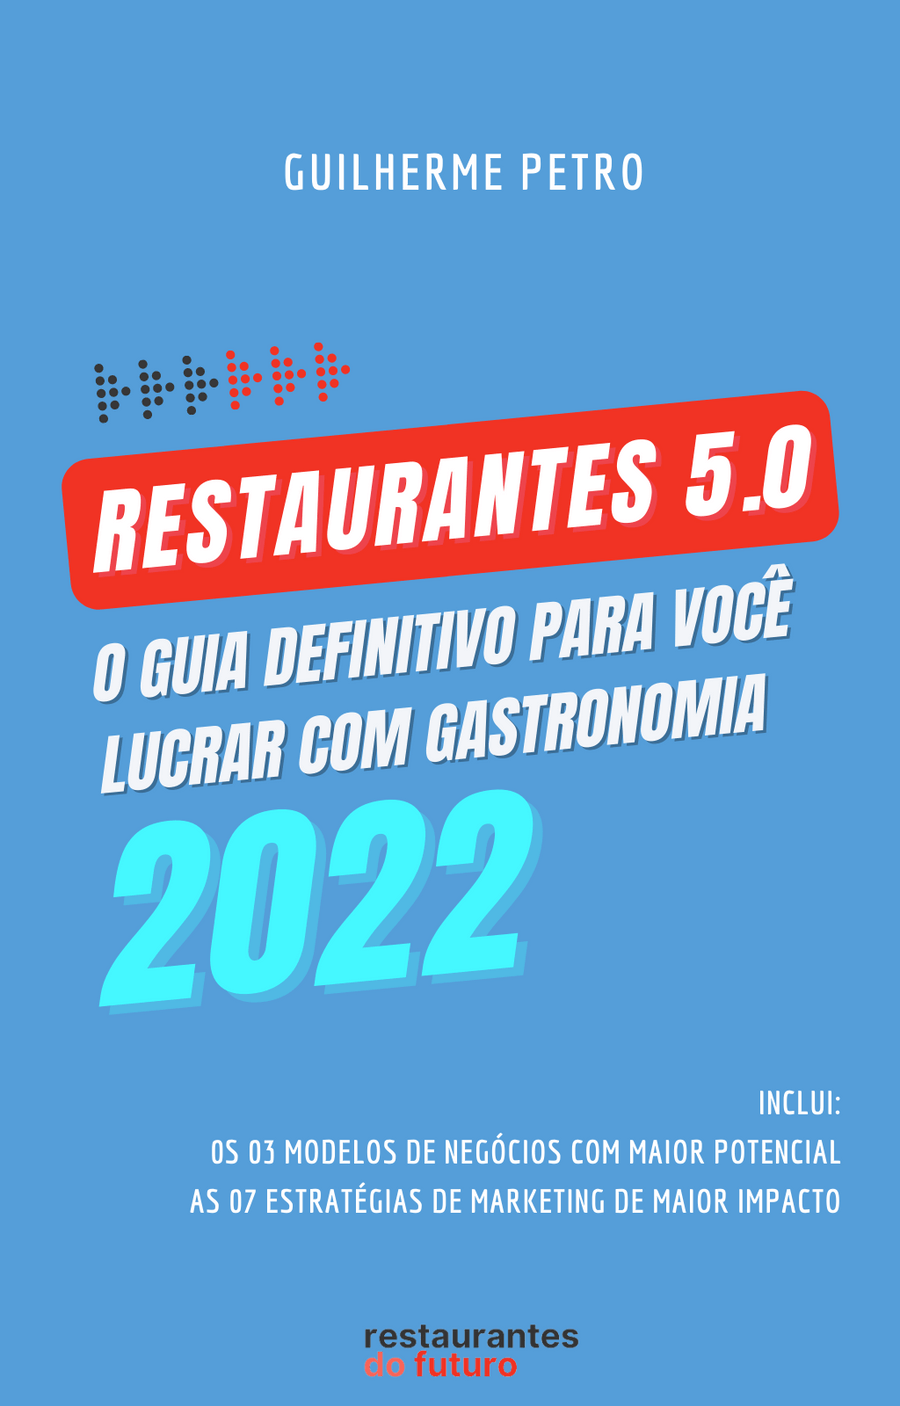 Pré-lançamento do ebook "Restaurantes 5.0"